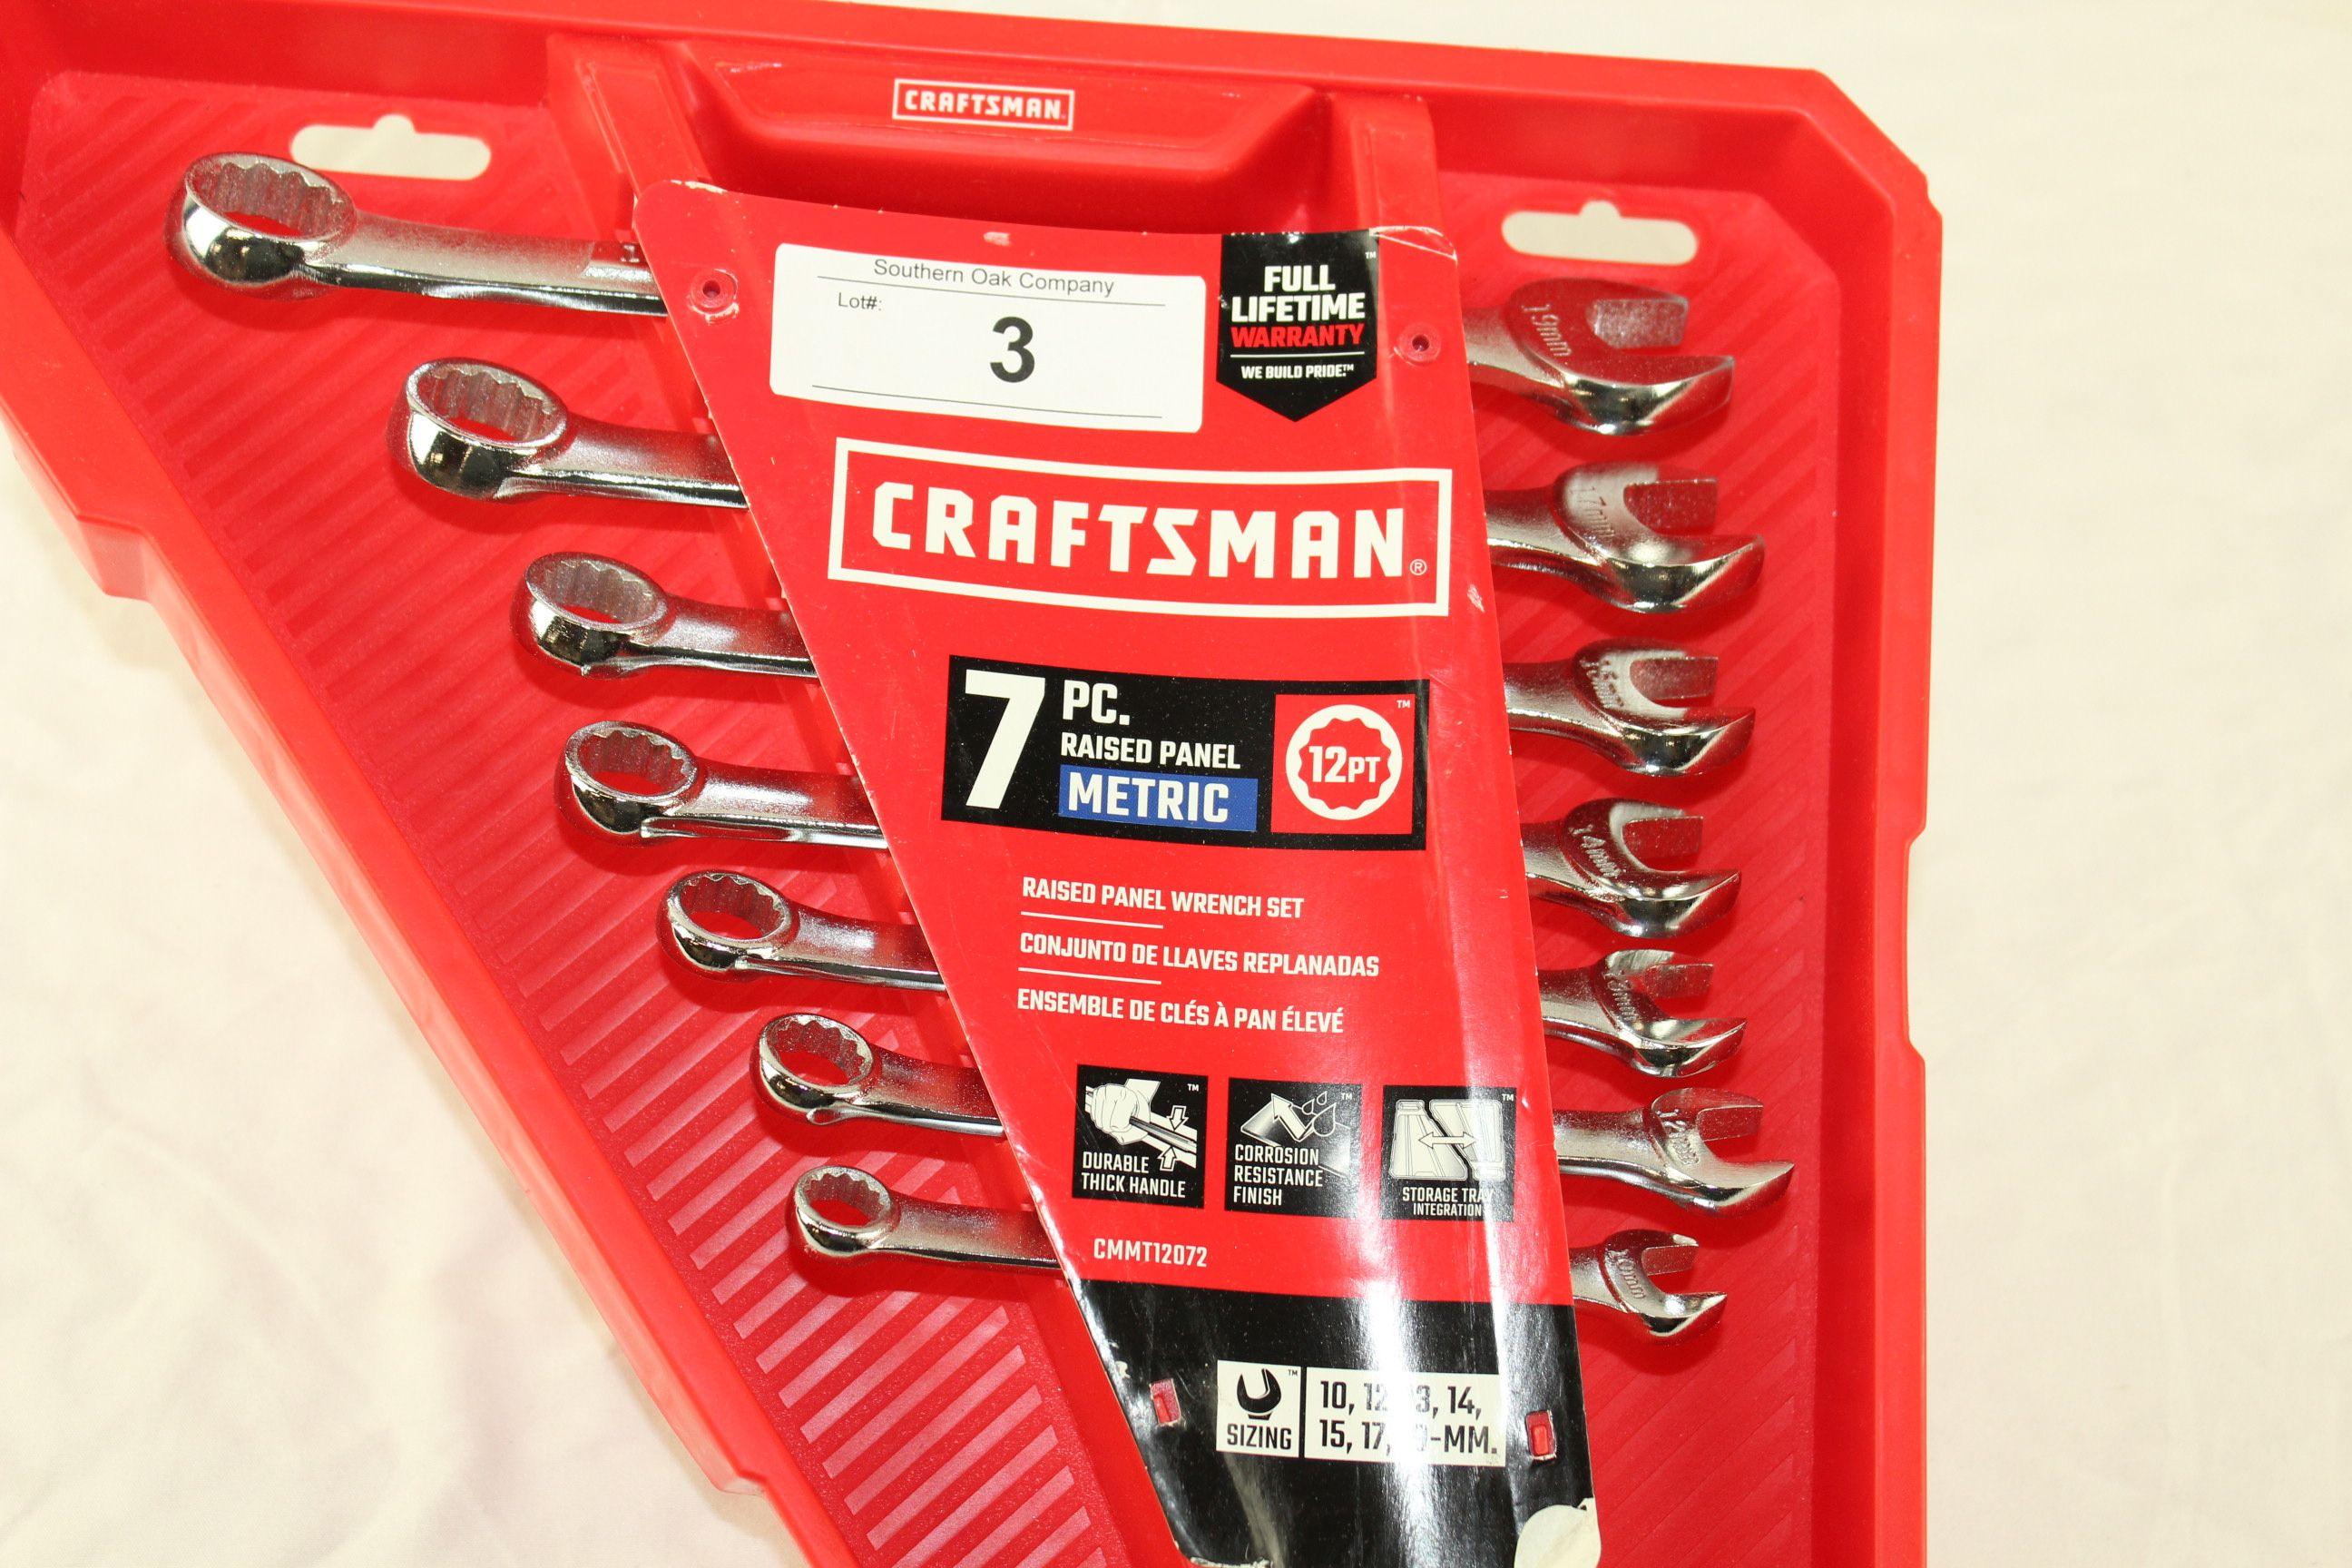 Craftsman 7 Pc. Raised Panel 12 PT Wrench Set - Metric